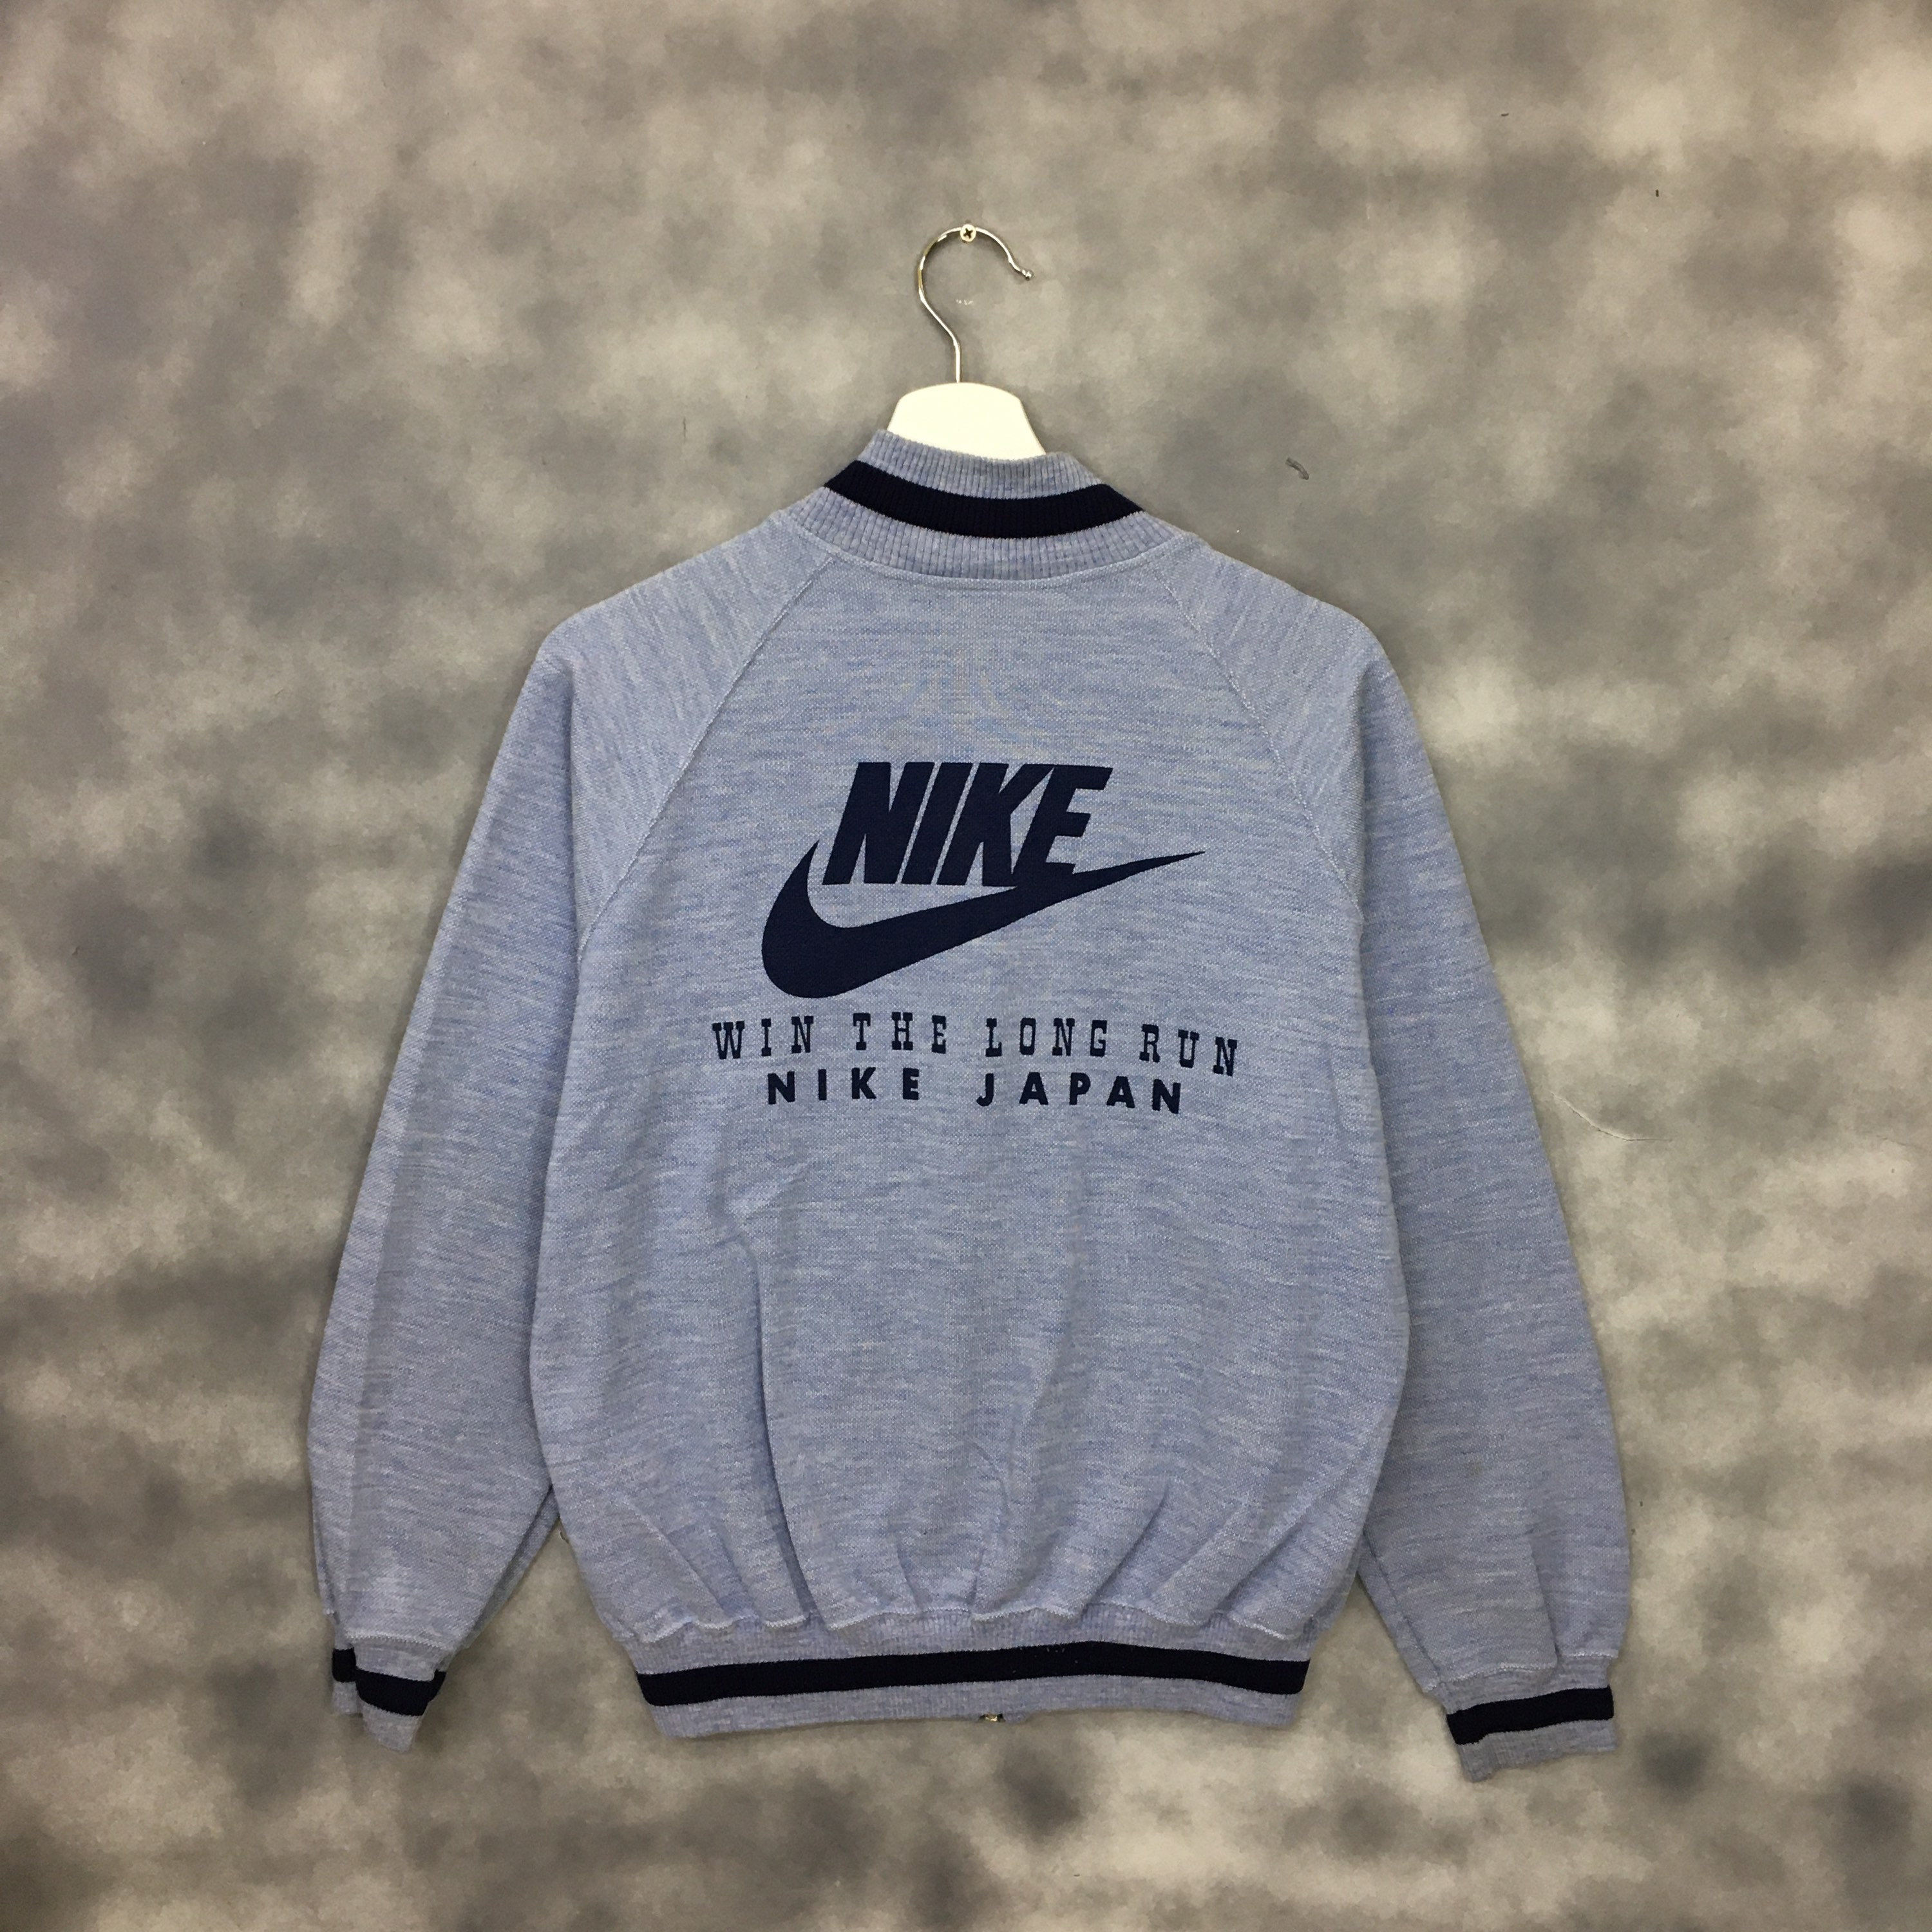 Sanders toon Wierook RARE Vintage Nike Japan Zipper Sweater Big Logo Swoosh Nike - Etsy Israel